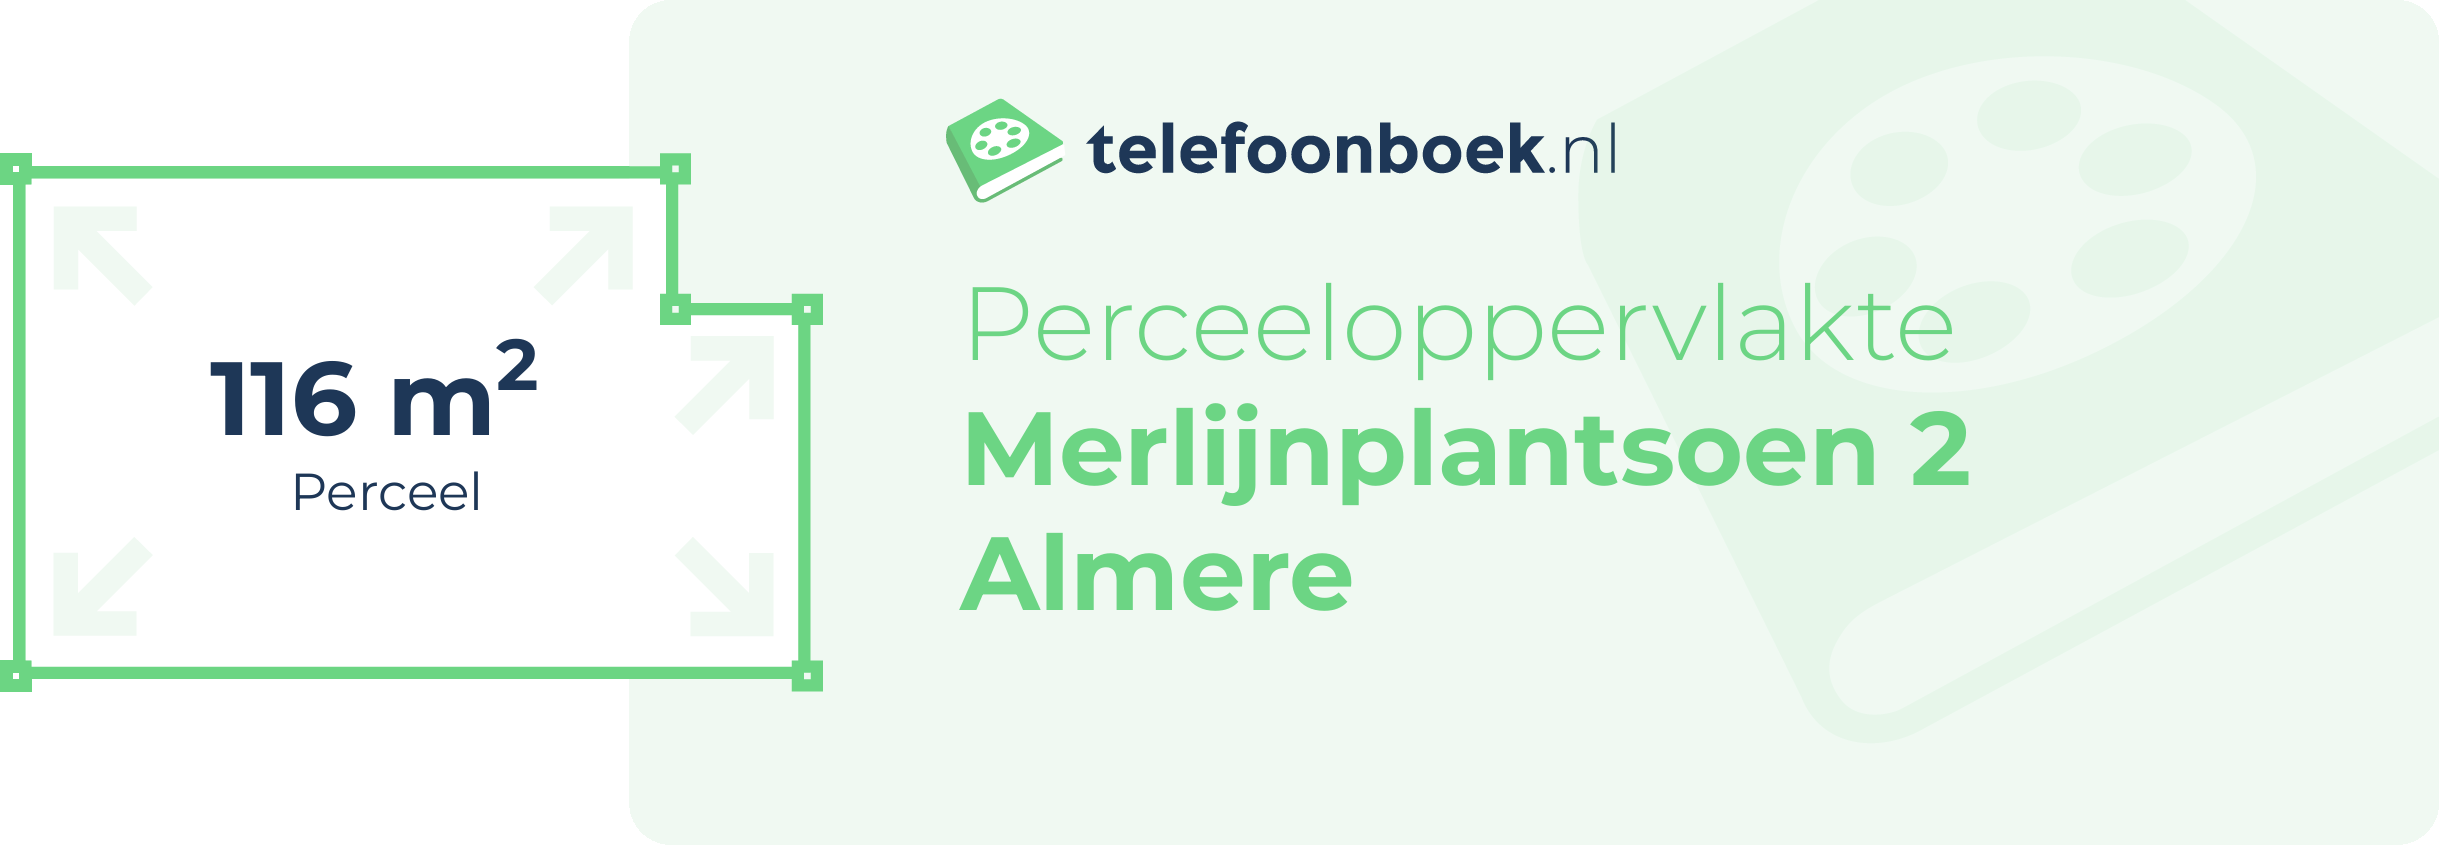 Perceeloppervlakte Merlijnplantsoen 2 Almere